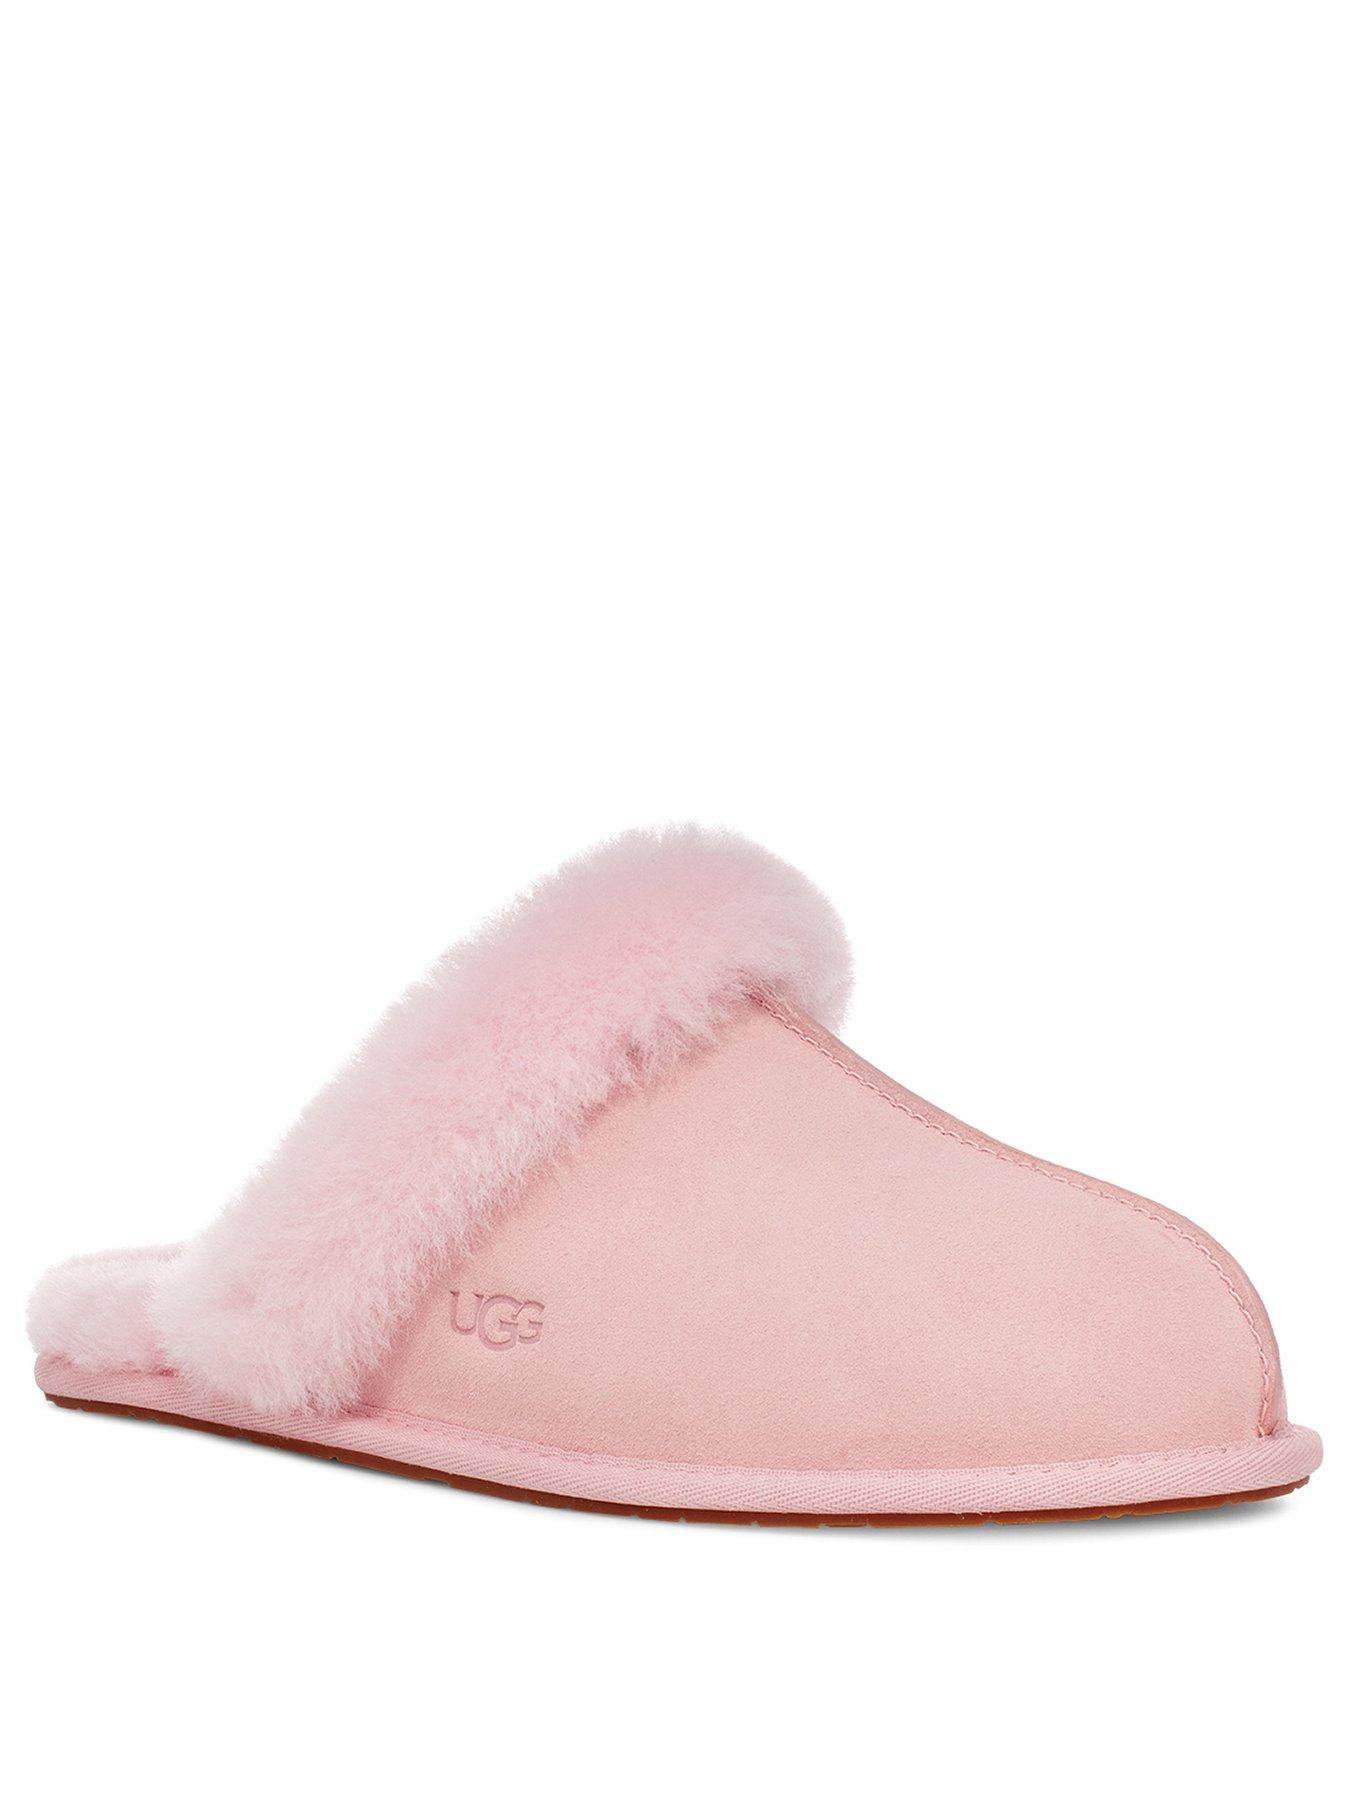 ugg slippers uk size 5